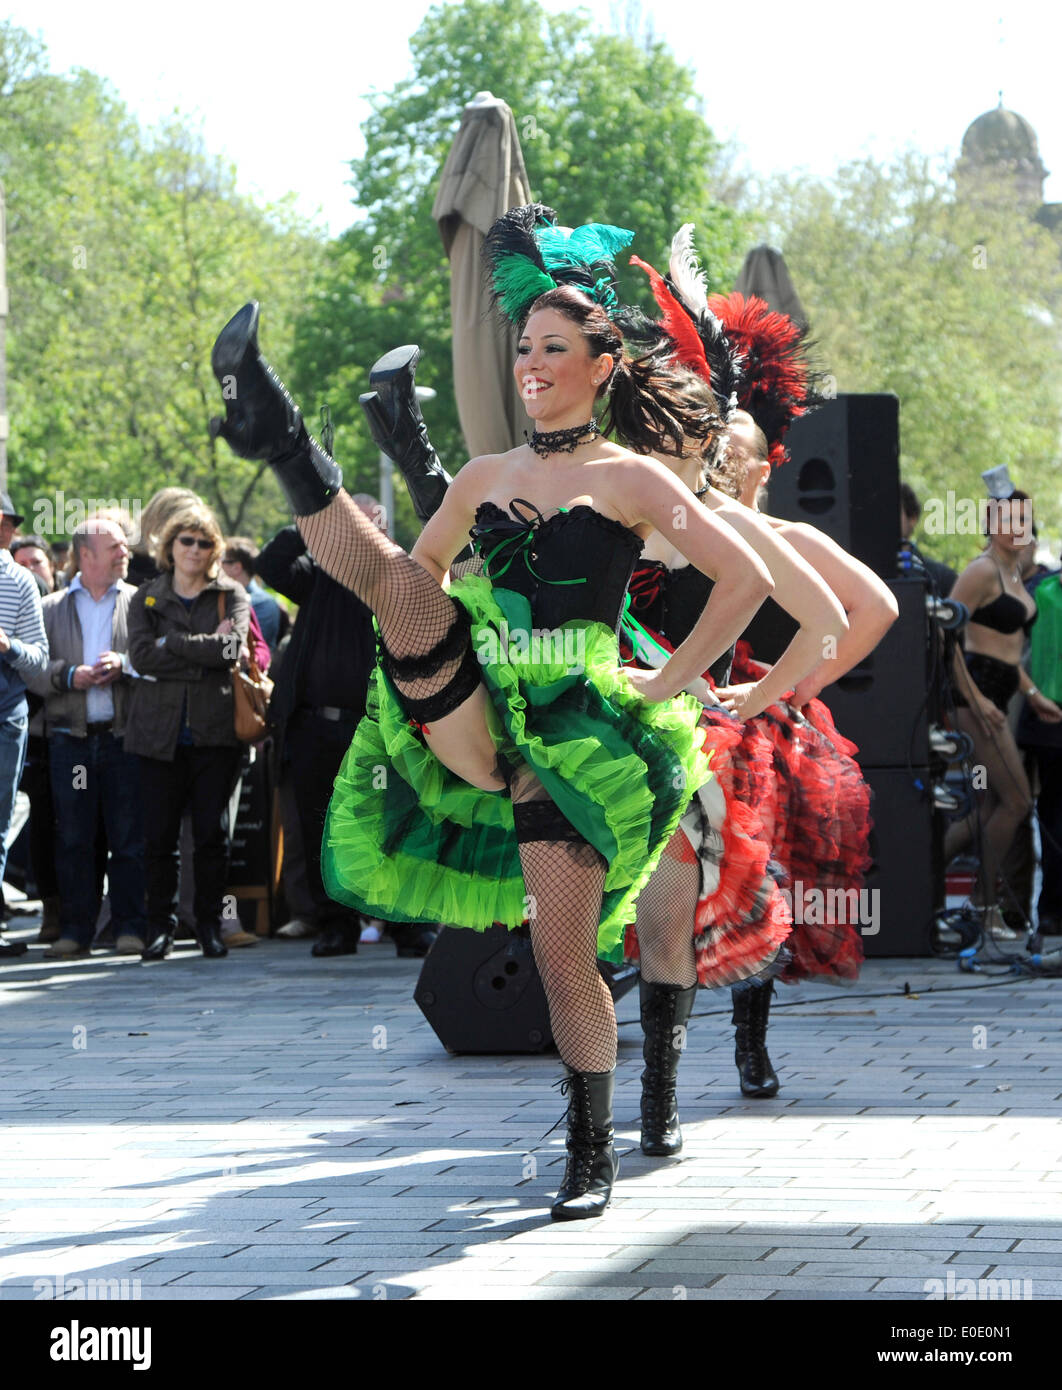 L'Electric cabaret Moulin Rouge Show divertit les foules avec danse burlesque à Brighton Festival Fringe Ville événement aujourd'hui UK Banque D'Images